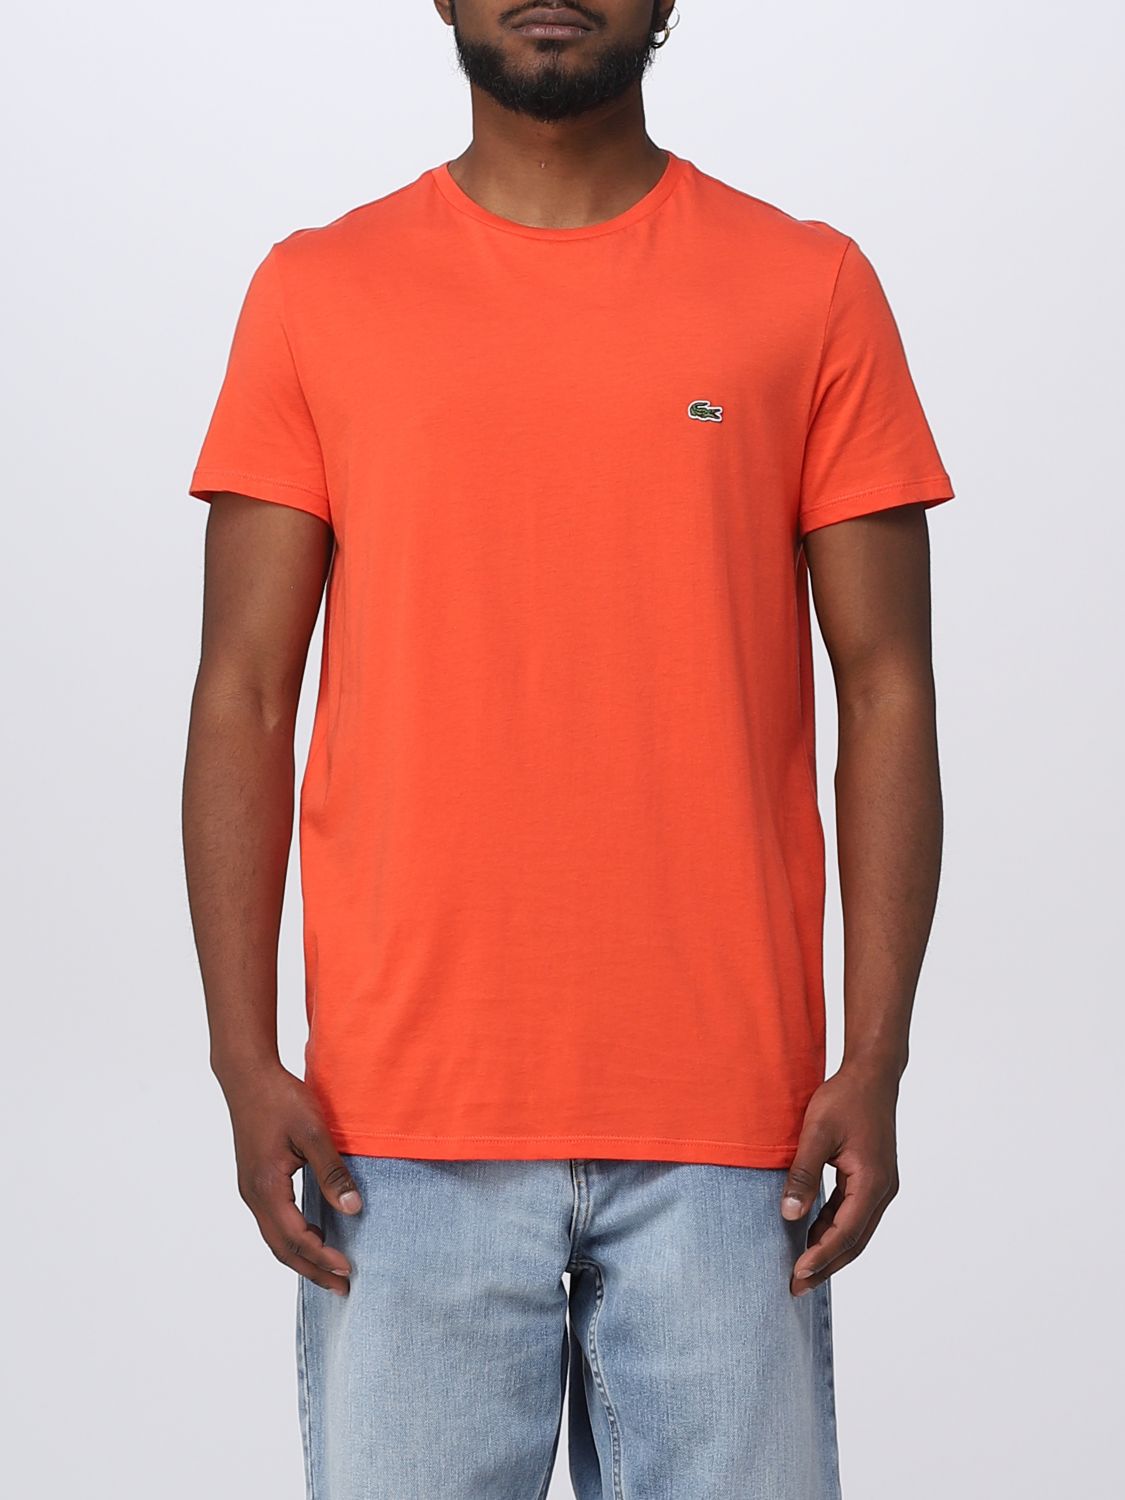 LACOSTE：Tシャツ メンズ オレンジ Tシャツ TH6709